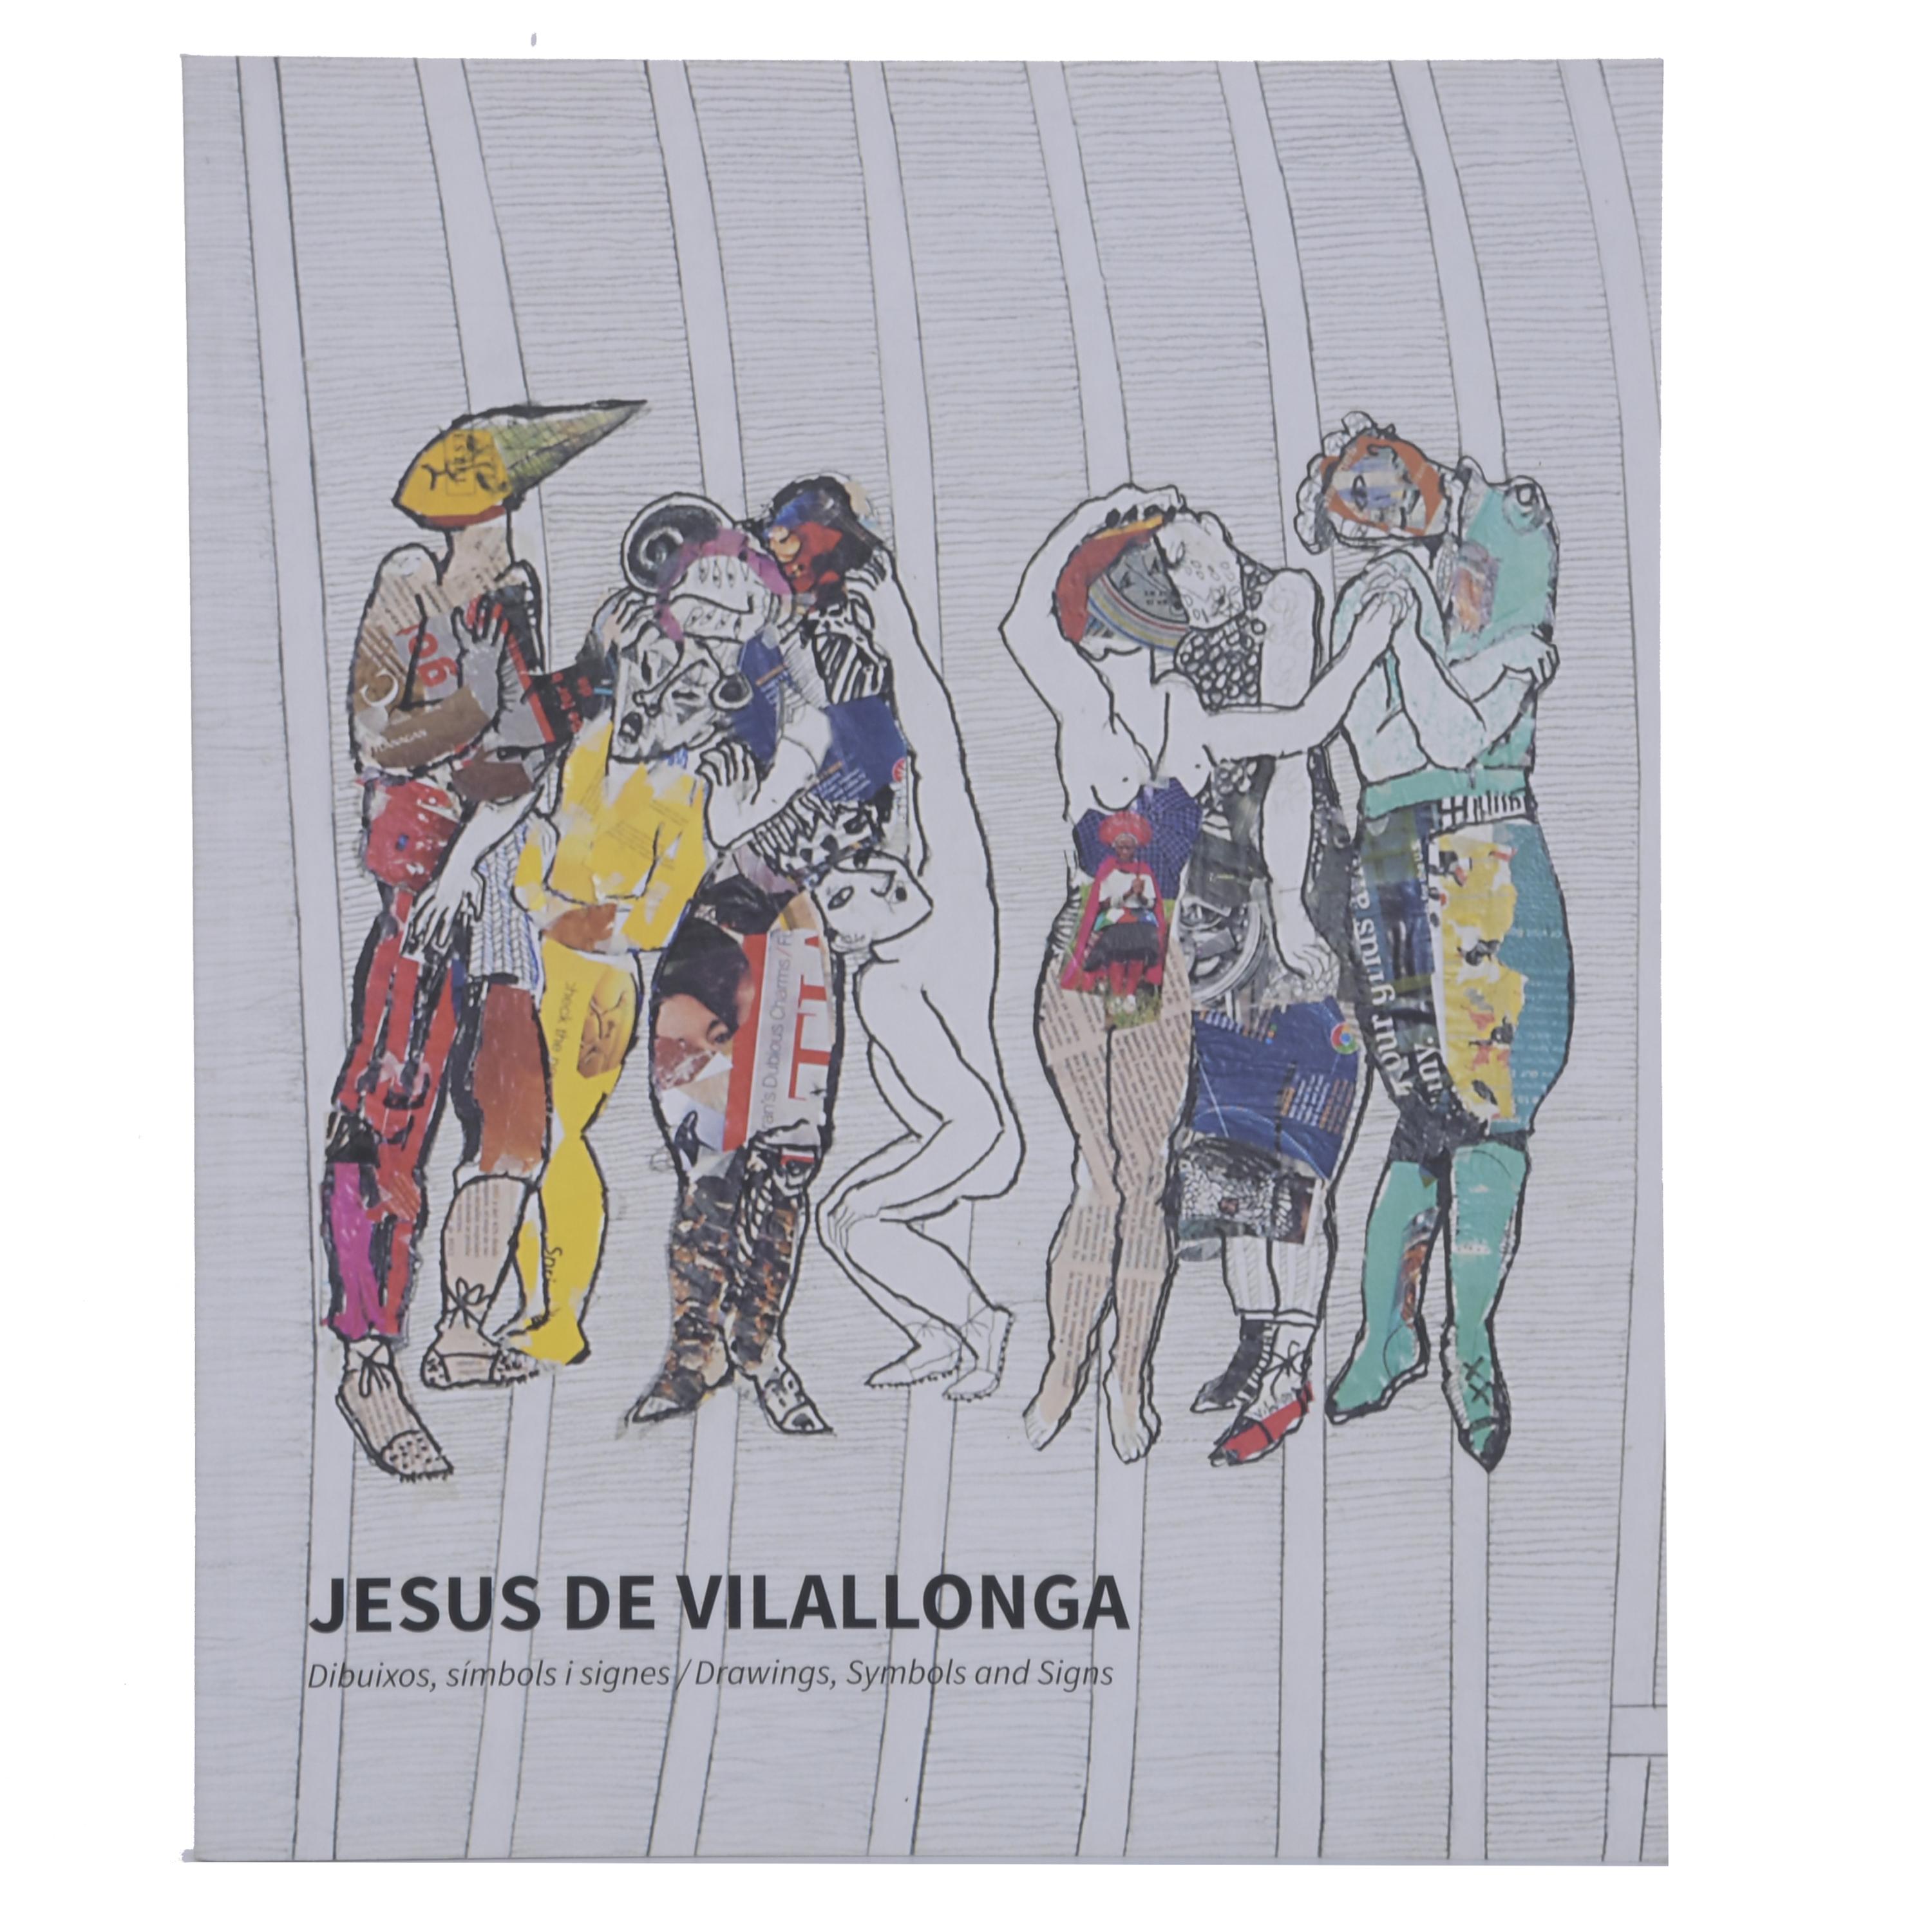 "JESUS DE VILALLONGA"